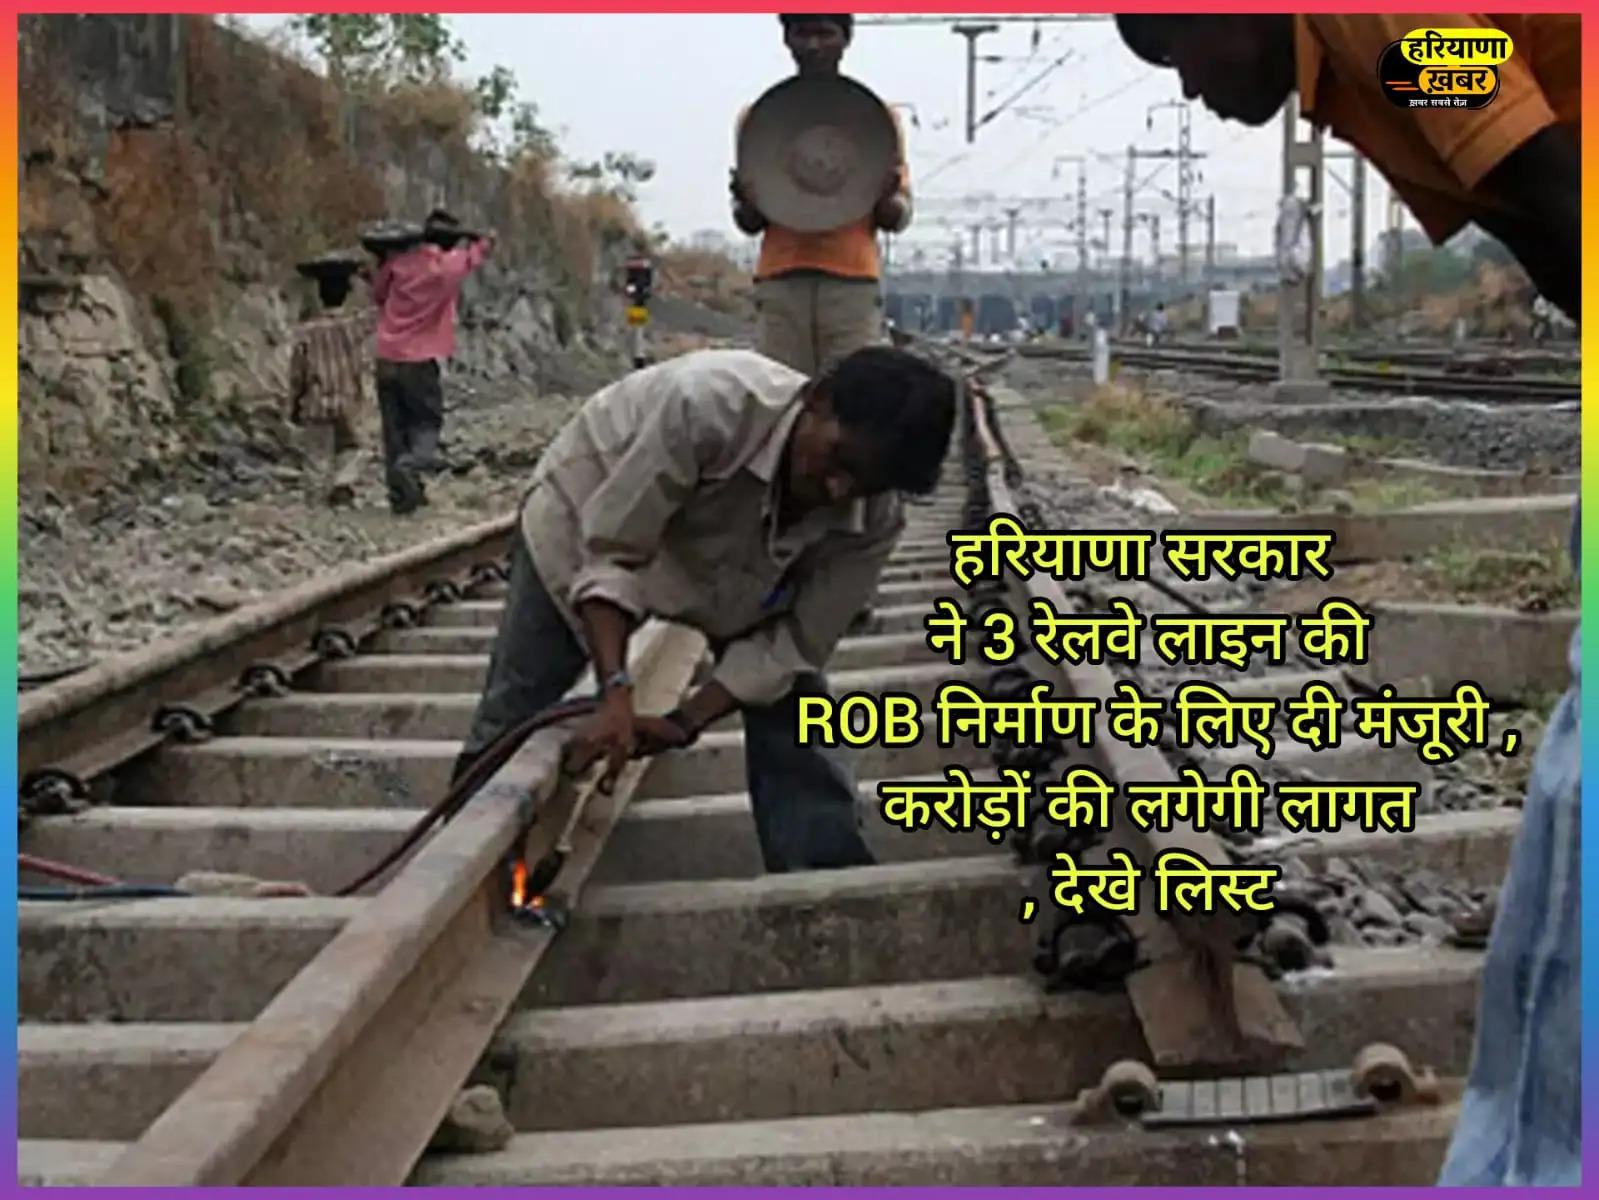 हरियाणा सरकार ने 3 रेलवे लाइन की ROB निर्माण के लिए दी मंजूरी ,करोड़ों की लगेगी लागत, देखे लिस्ट